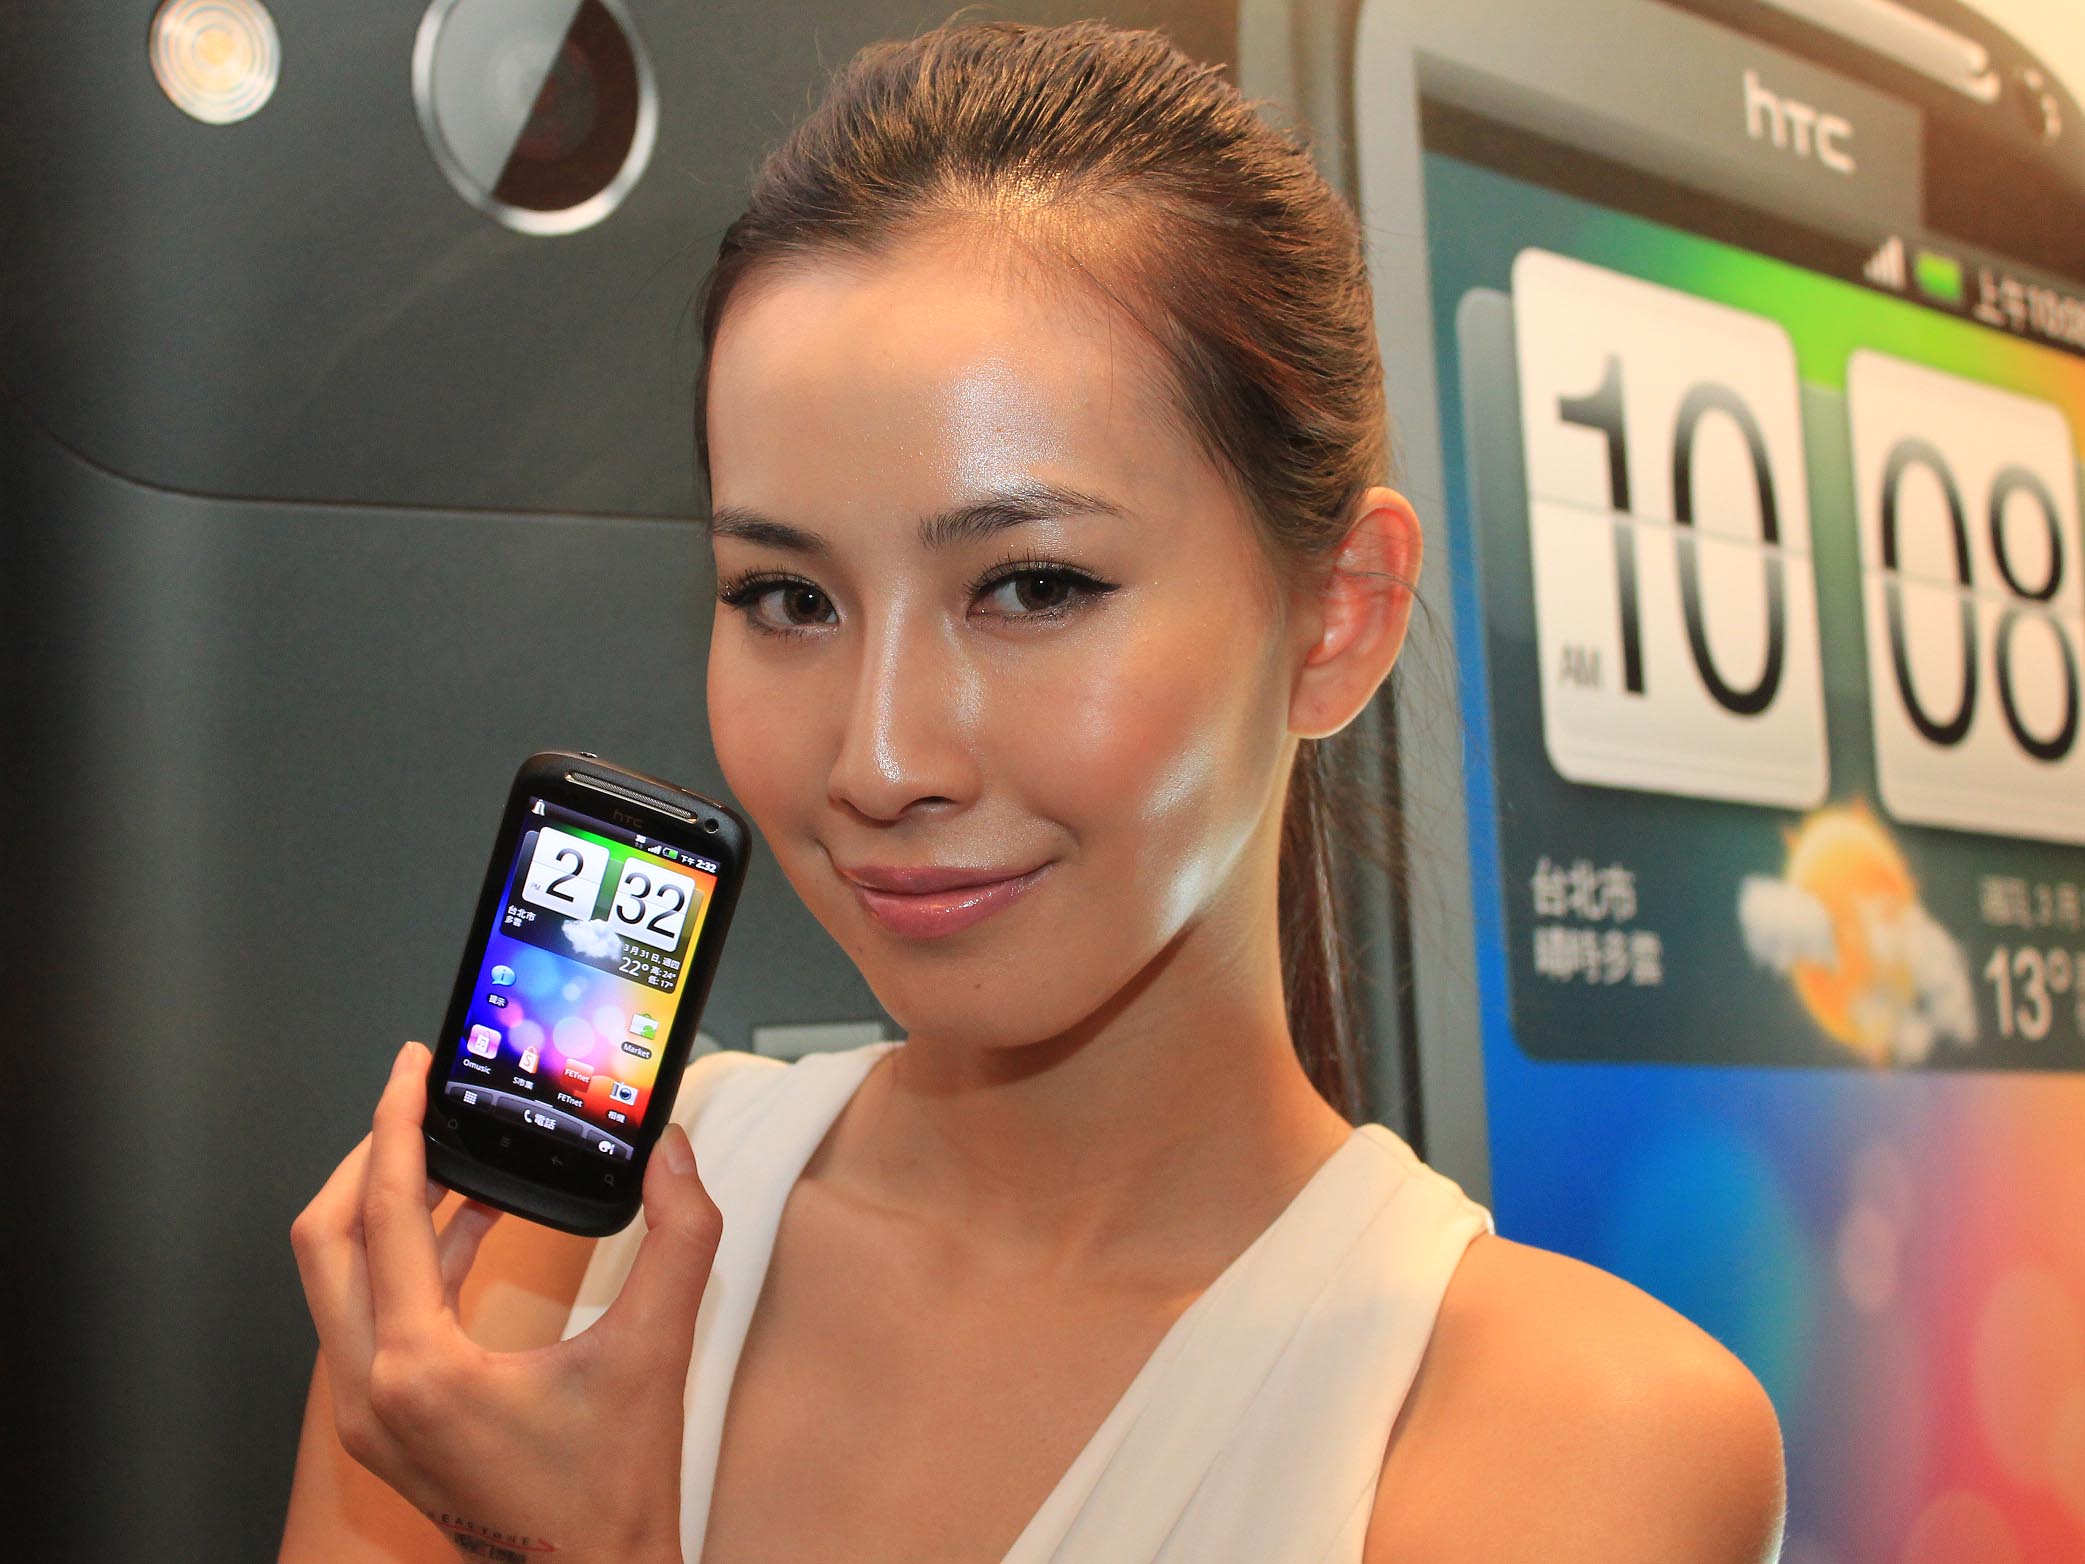 更好的渴望機 HTC Desire S 上市價 15,900 元